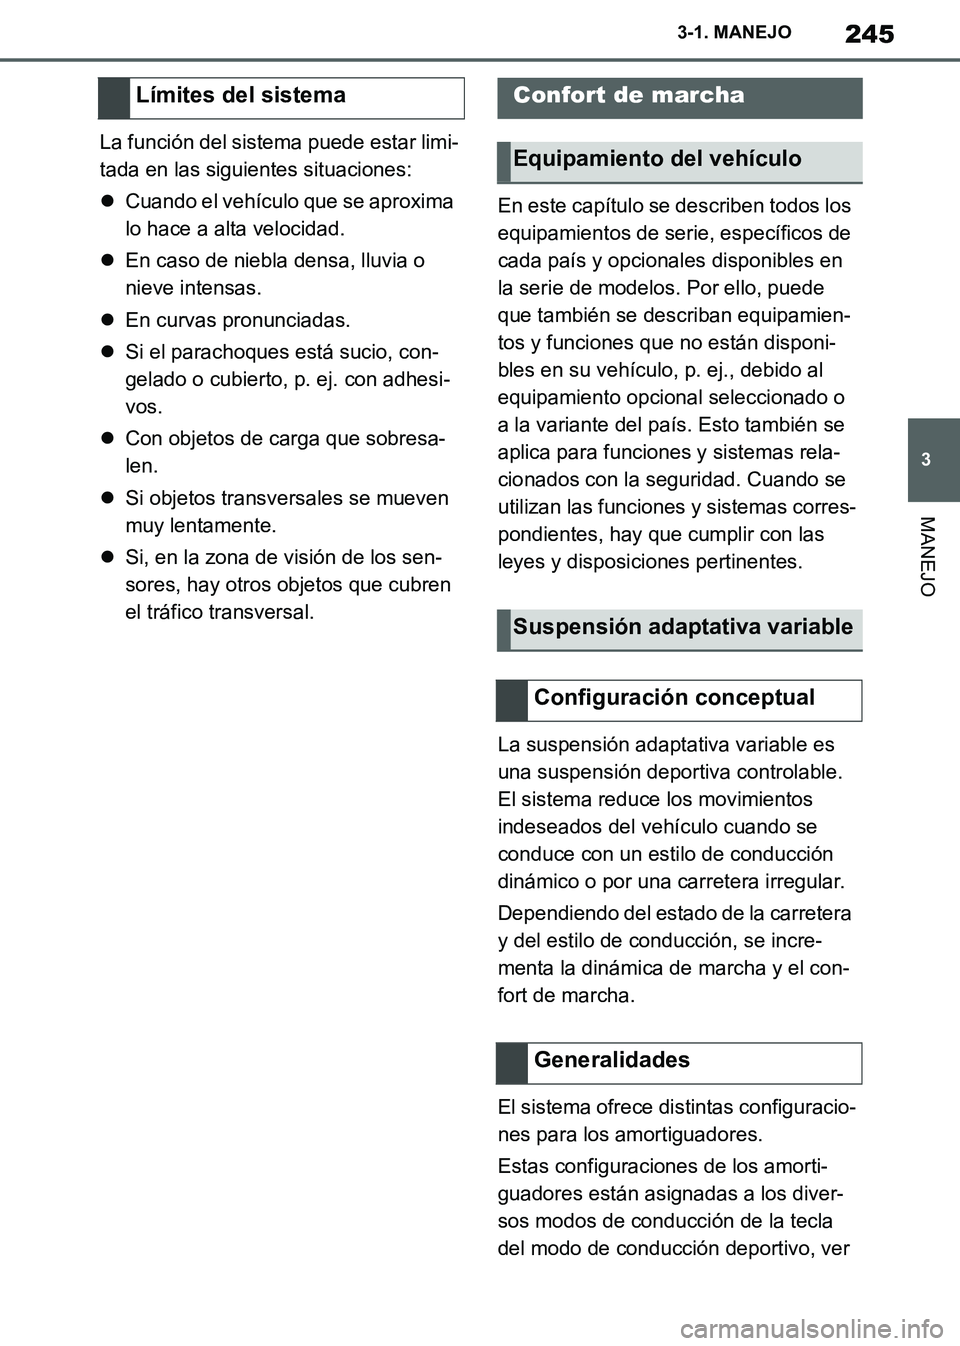 TOYOTA SUPRA 2019  Manuale de Empleo (in Spanish) 245
3
Supra Owners Manual_ES
3-1. MANEJO
MANEJO
La función del sistema puede estar limi-
tada en las siguientes situaciones:
Cuando el vehículo que se aproxima 
lo hace a alta velocidad.
En c